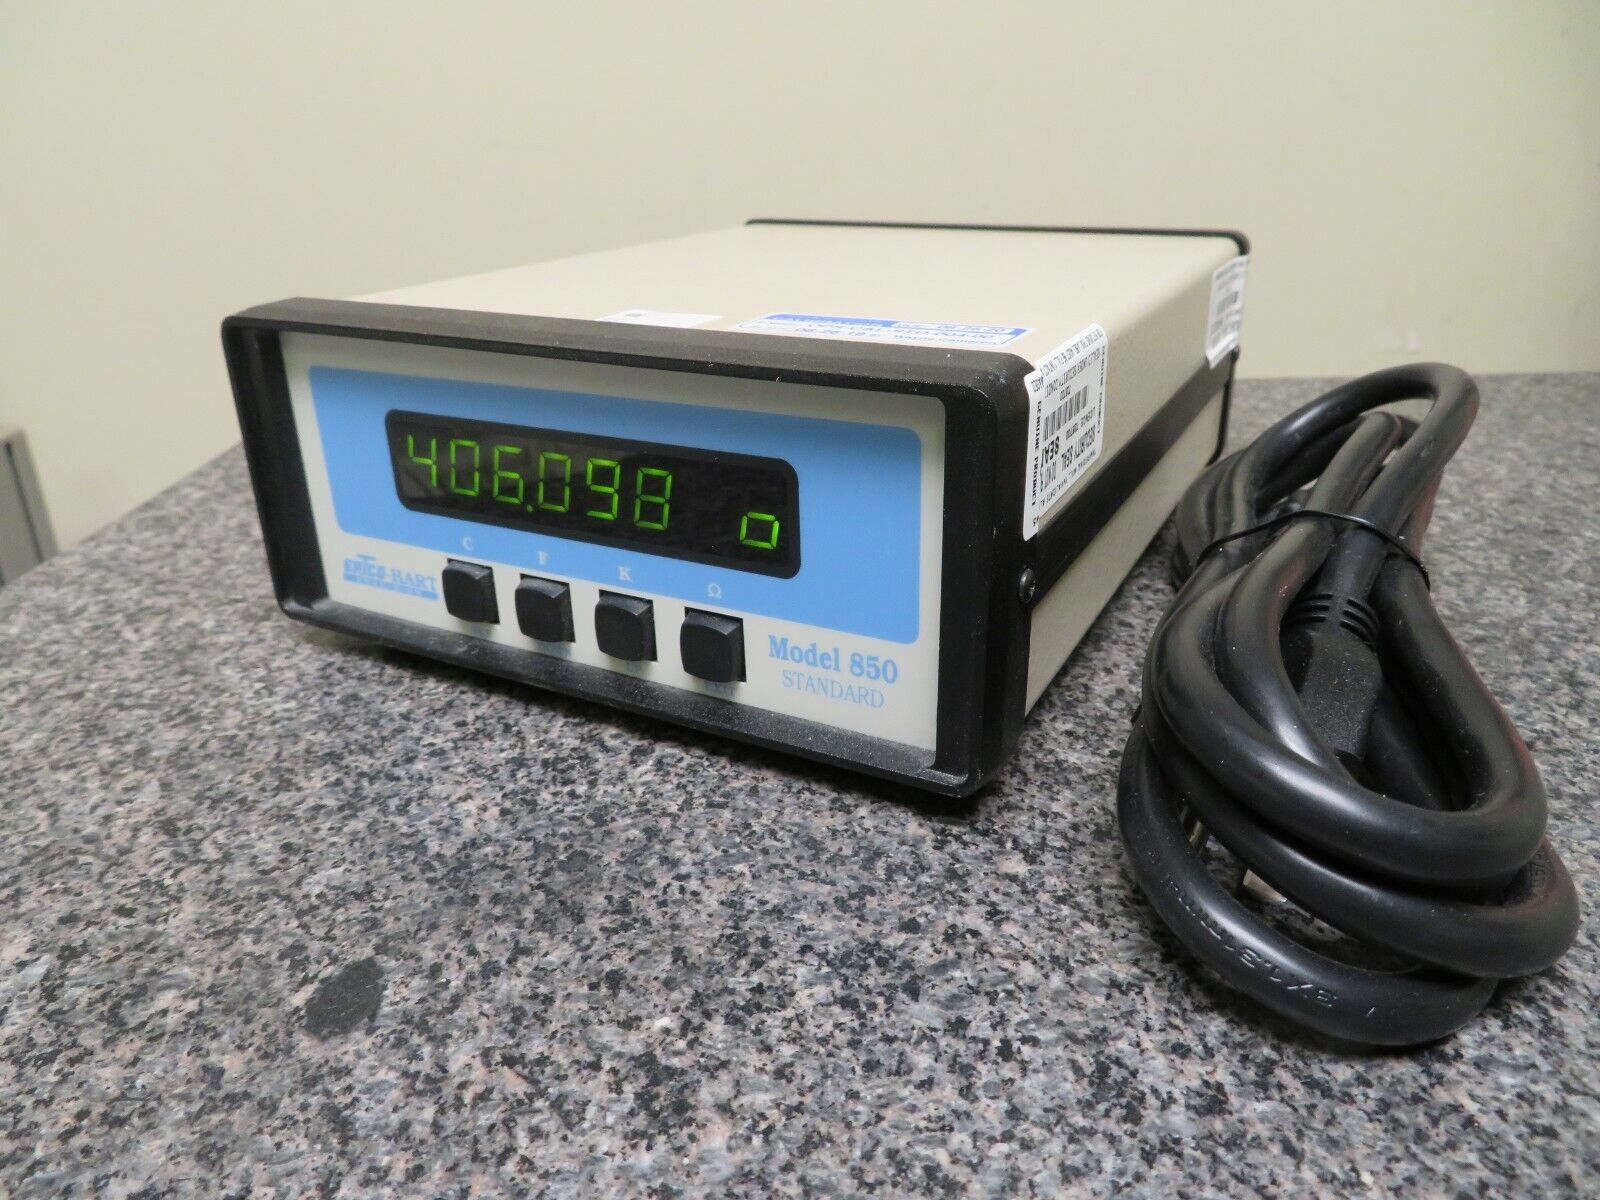 Ertco-Hart Model 850 Standard Tweener Thermometer Readouts PF1